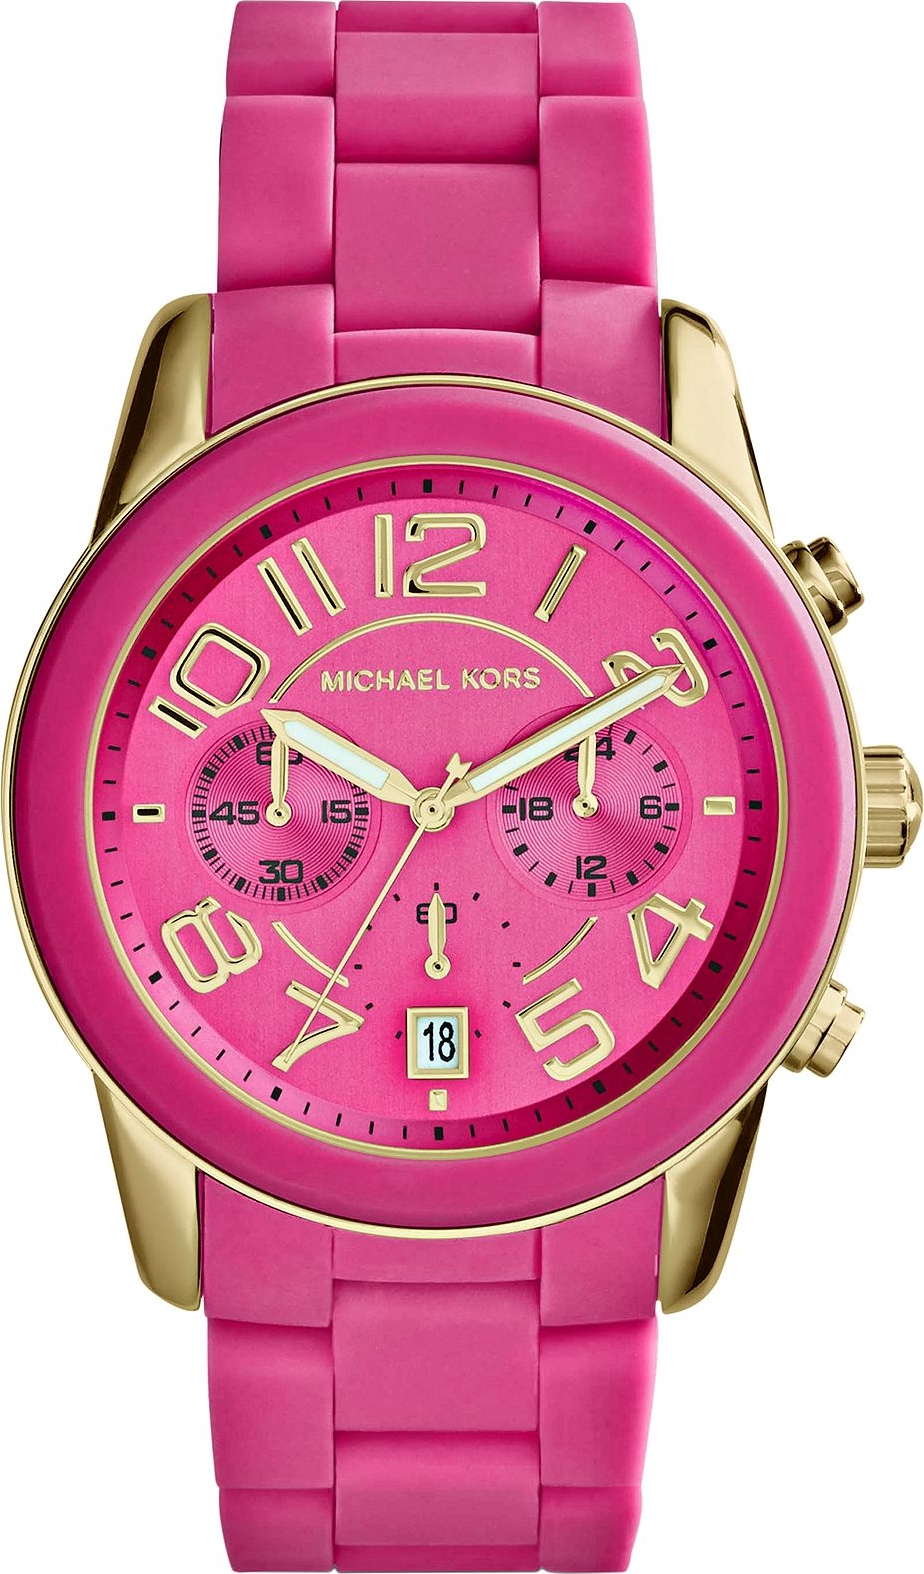 Top 67+ imagen pink michael kors watch